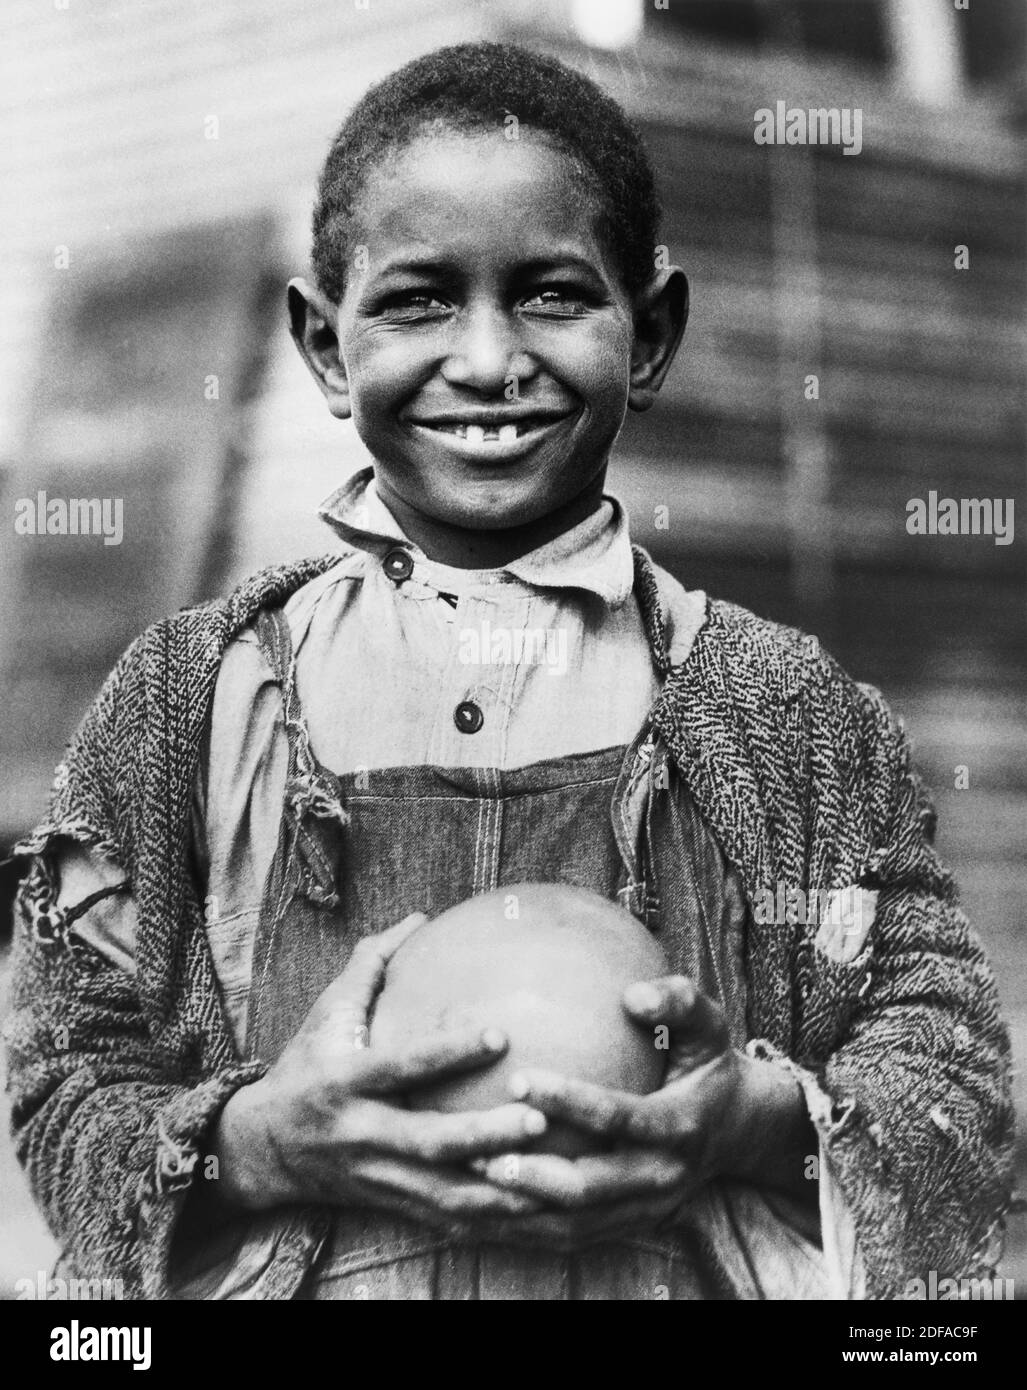 Giovane ragazzo con pompelmo fornito dalla Croce Rossa americana alle vittime della siccità, Mound Bayou, Mississippi, USA, Lewis Wickes Hine, American National Red Cross Collection, 1930 Foto Stock